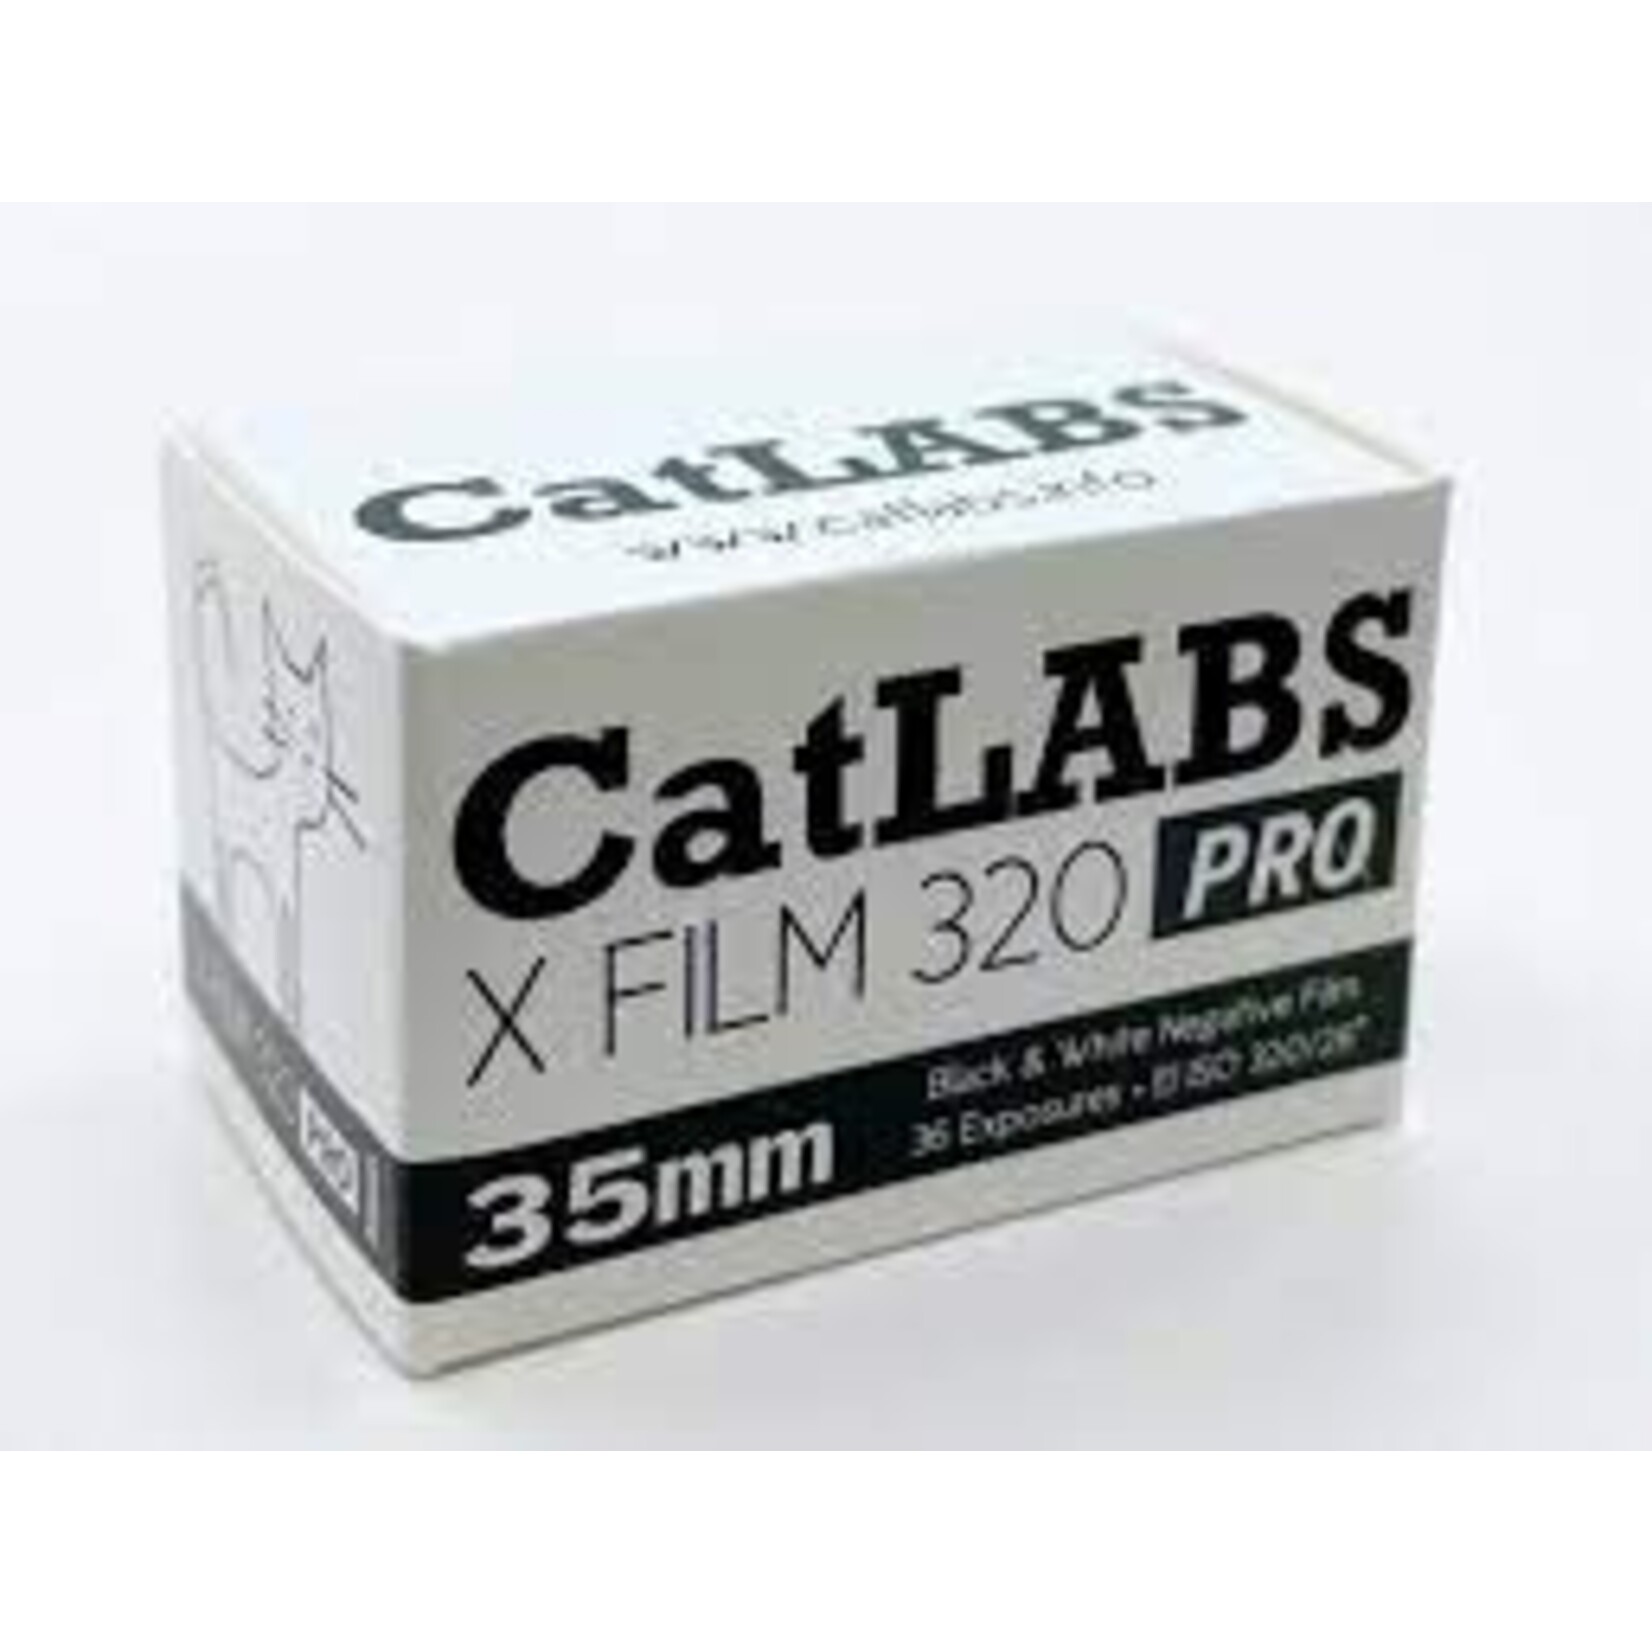 CatLabs CatLABS X Film 320 Pro 35/320/36 B&W